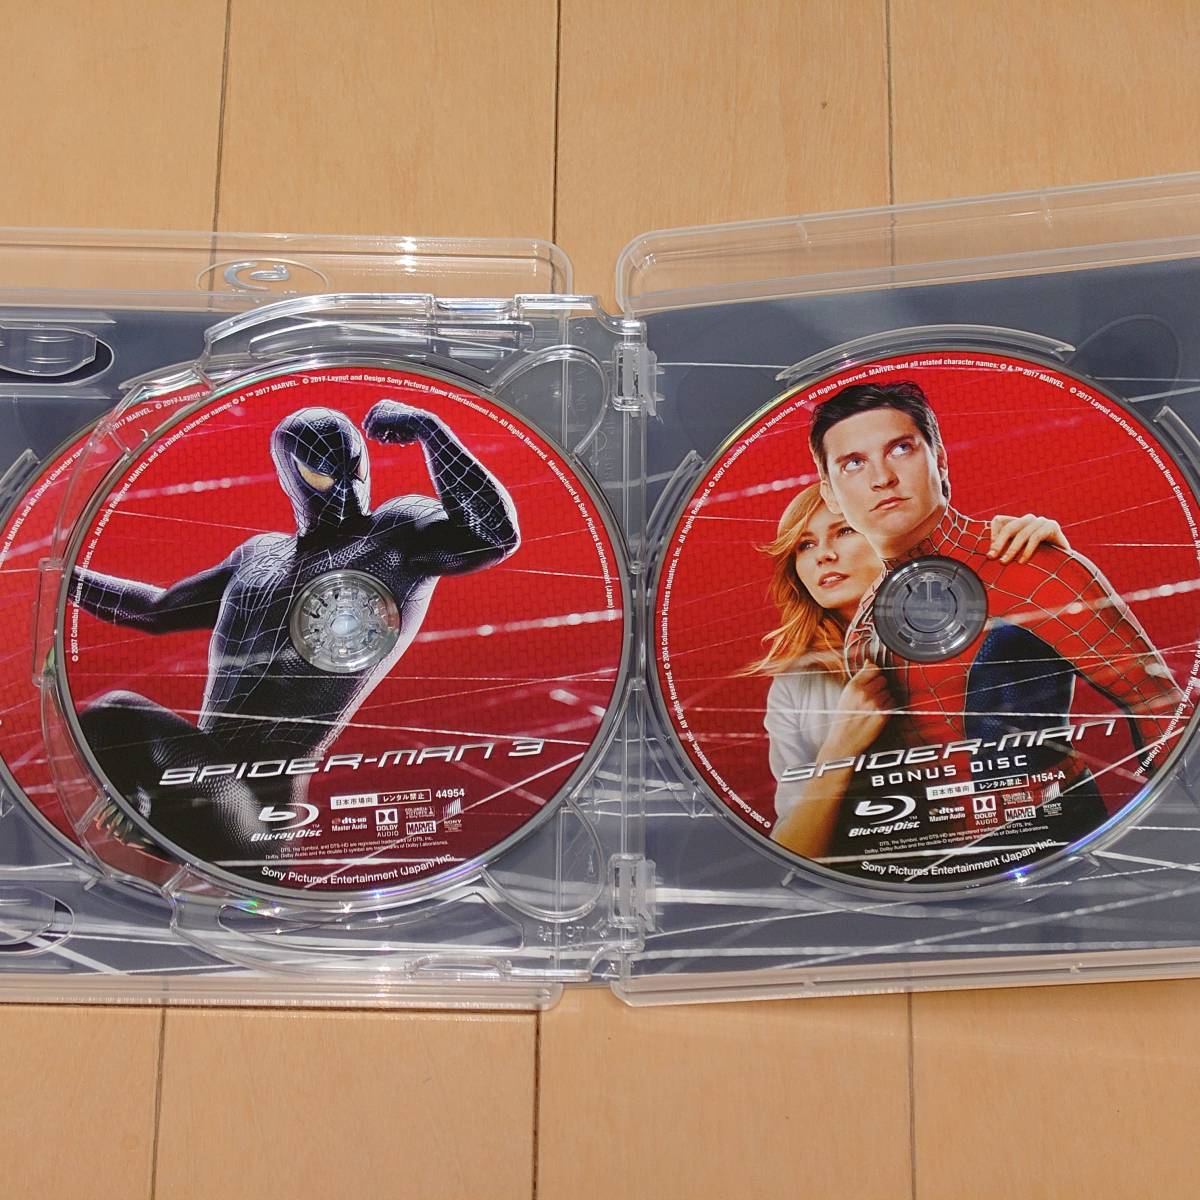 Blu-ray スパイダーマン トリロジー ブルーレイ コンプリートBOX 4枚組 